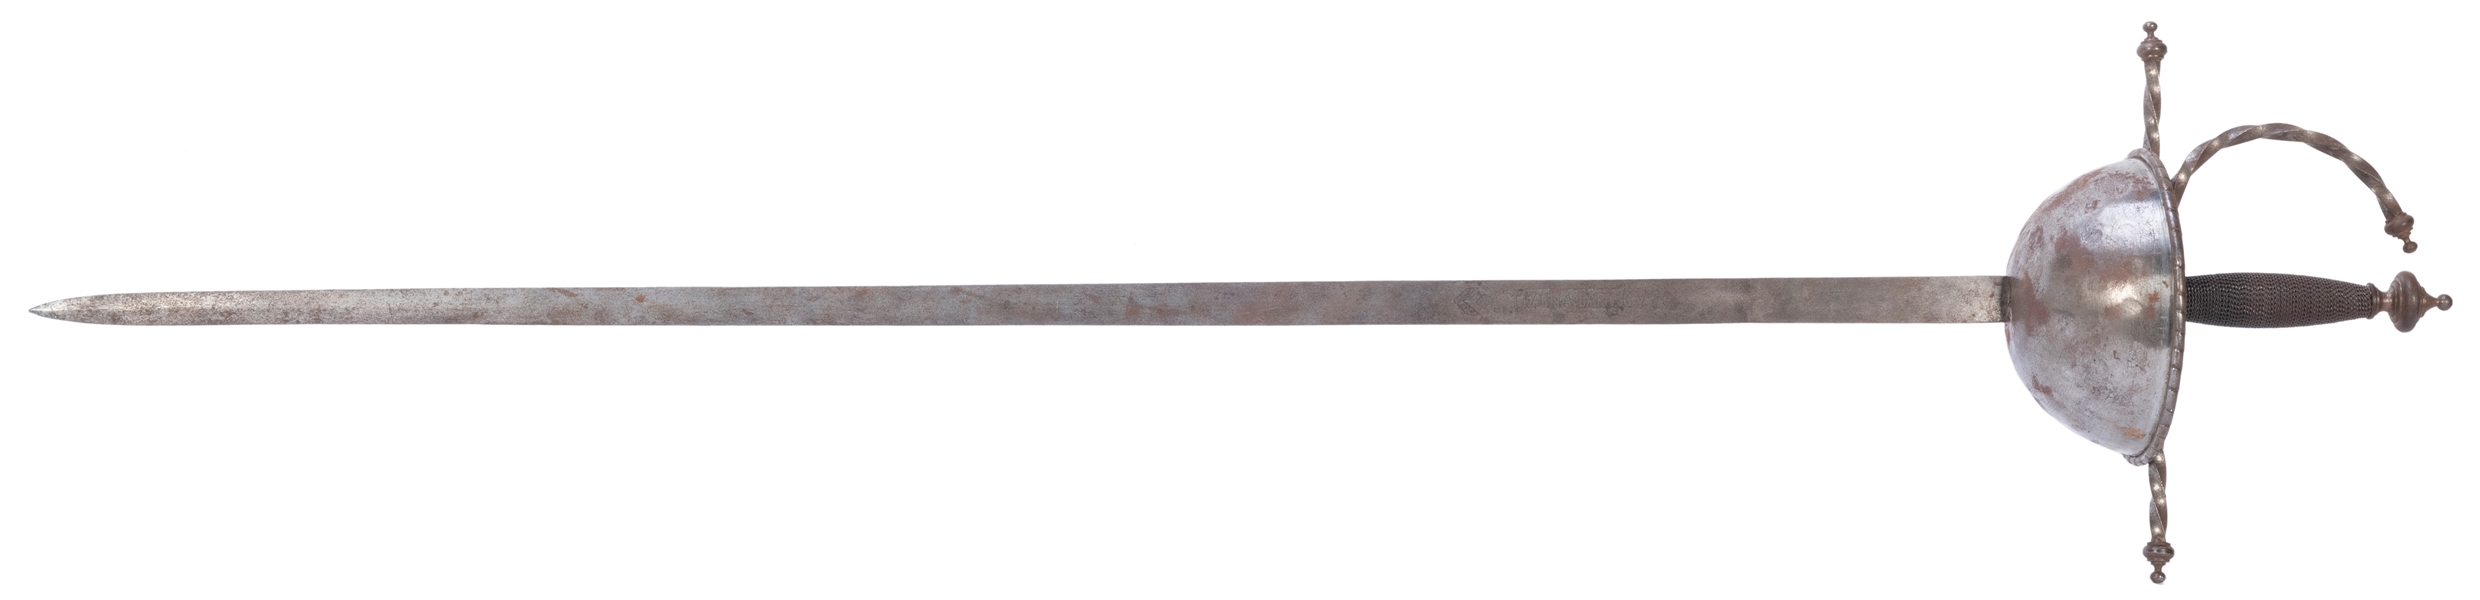  Tizona Carlos V Cup Sword. Toledo, Spain. 19th century repr...